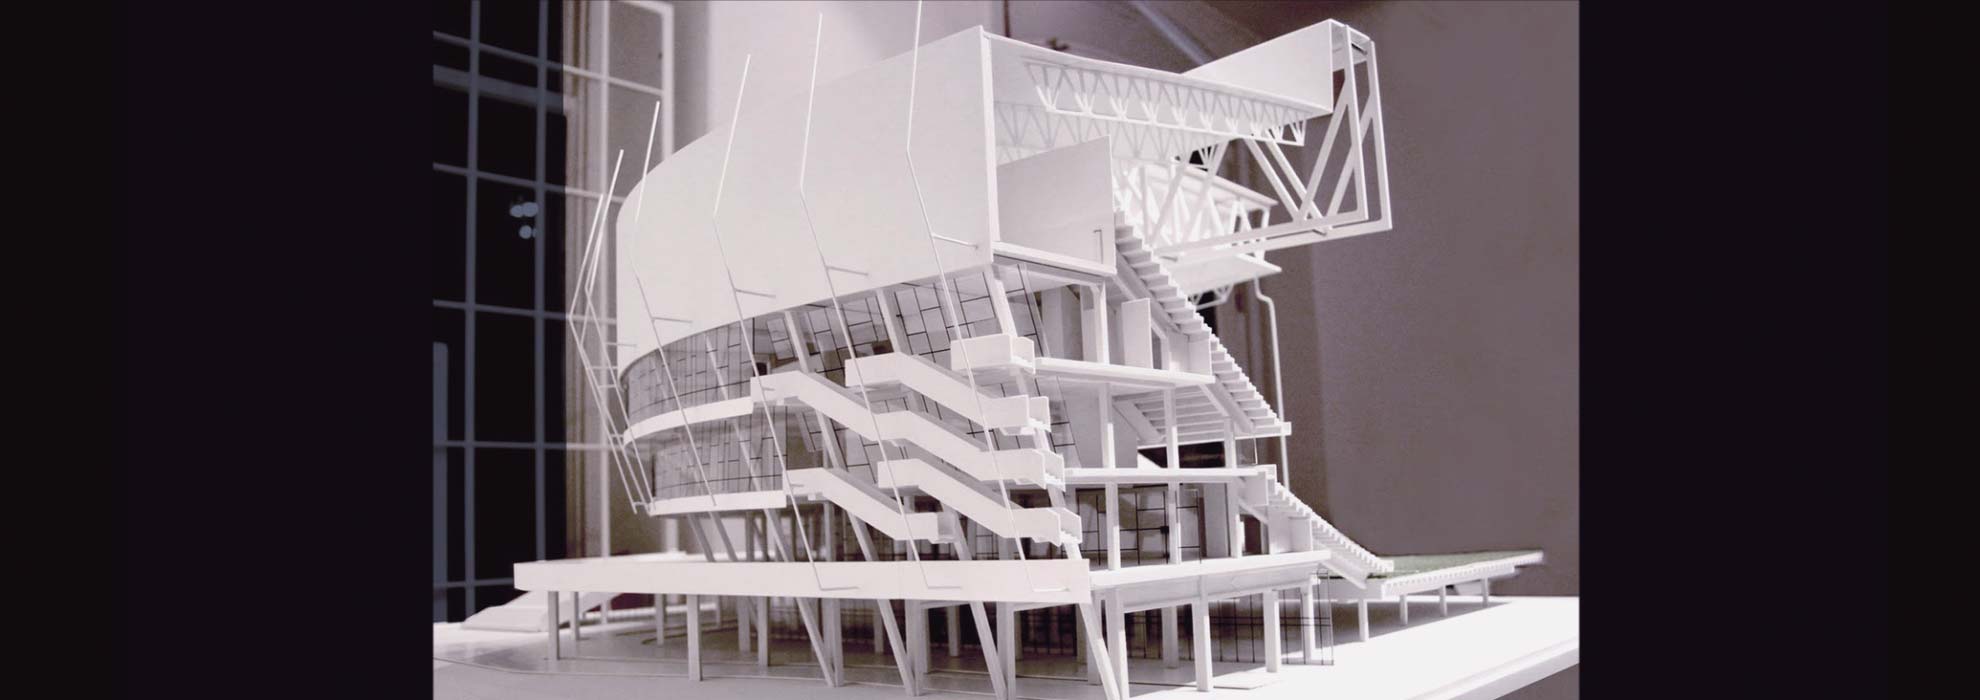 Модель проекта здания